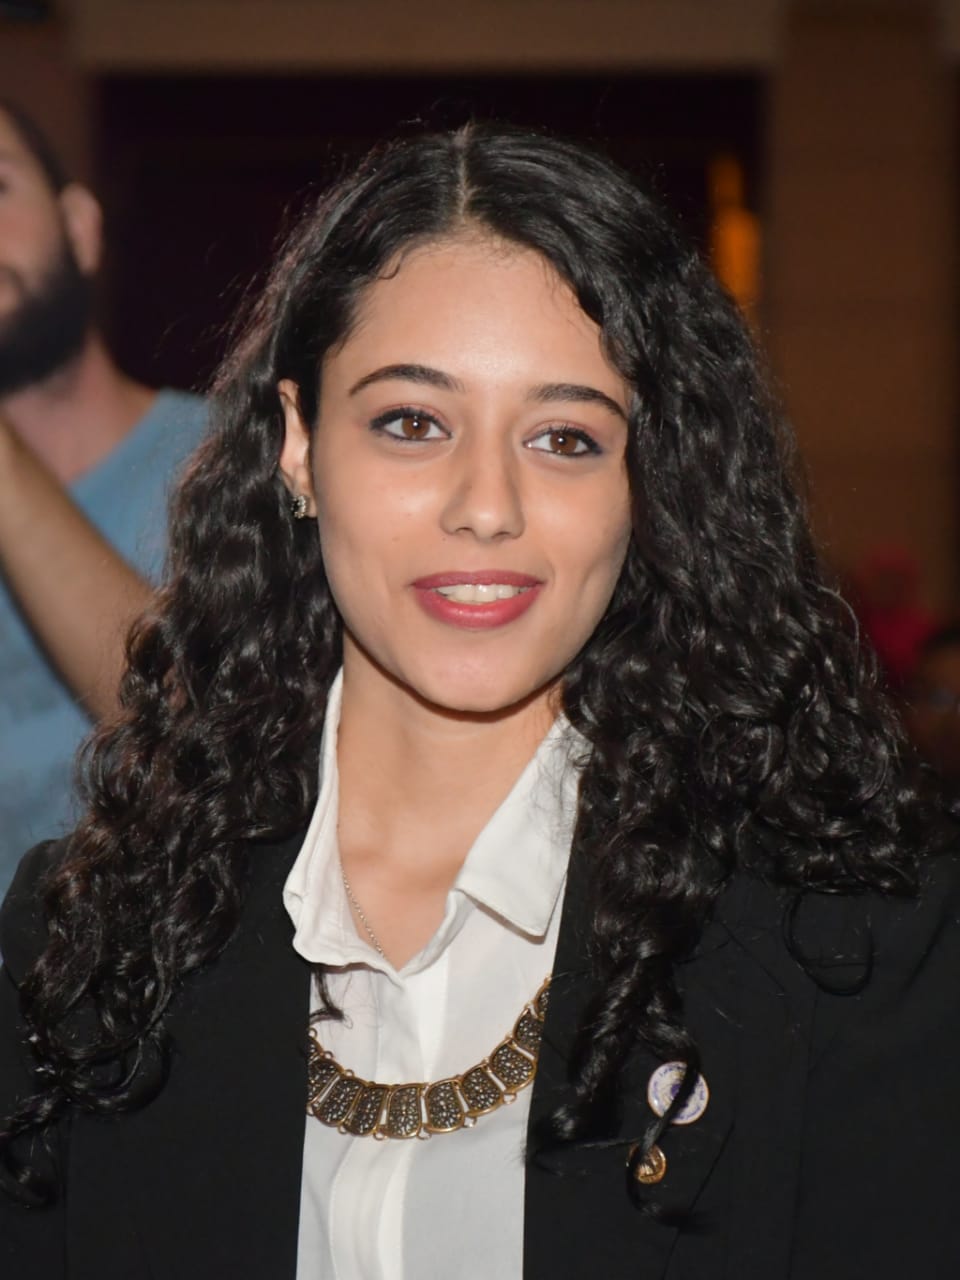 الطالبة دارين خليل رئيس اتحاد الطلاب بجامعة القاهرة